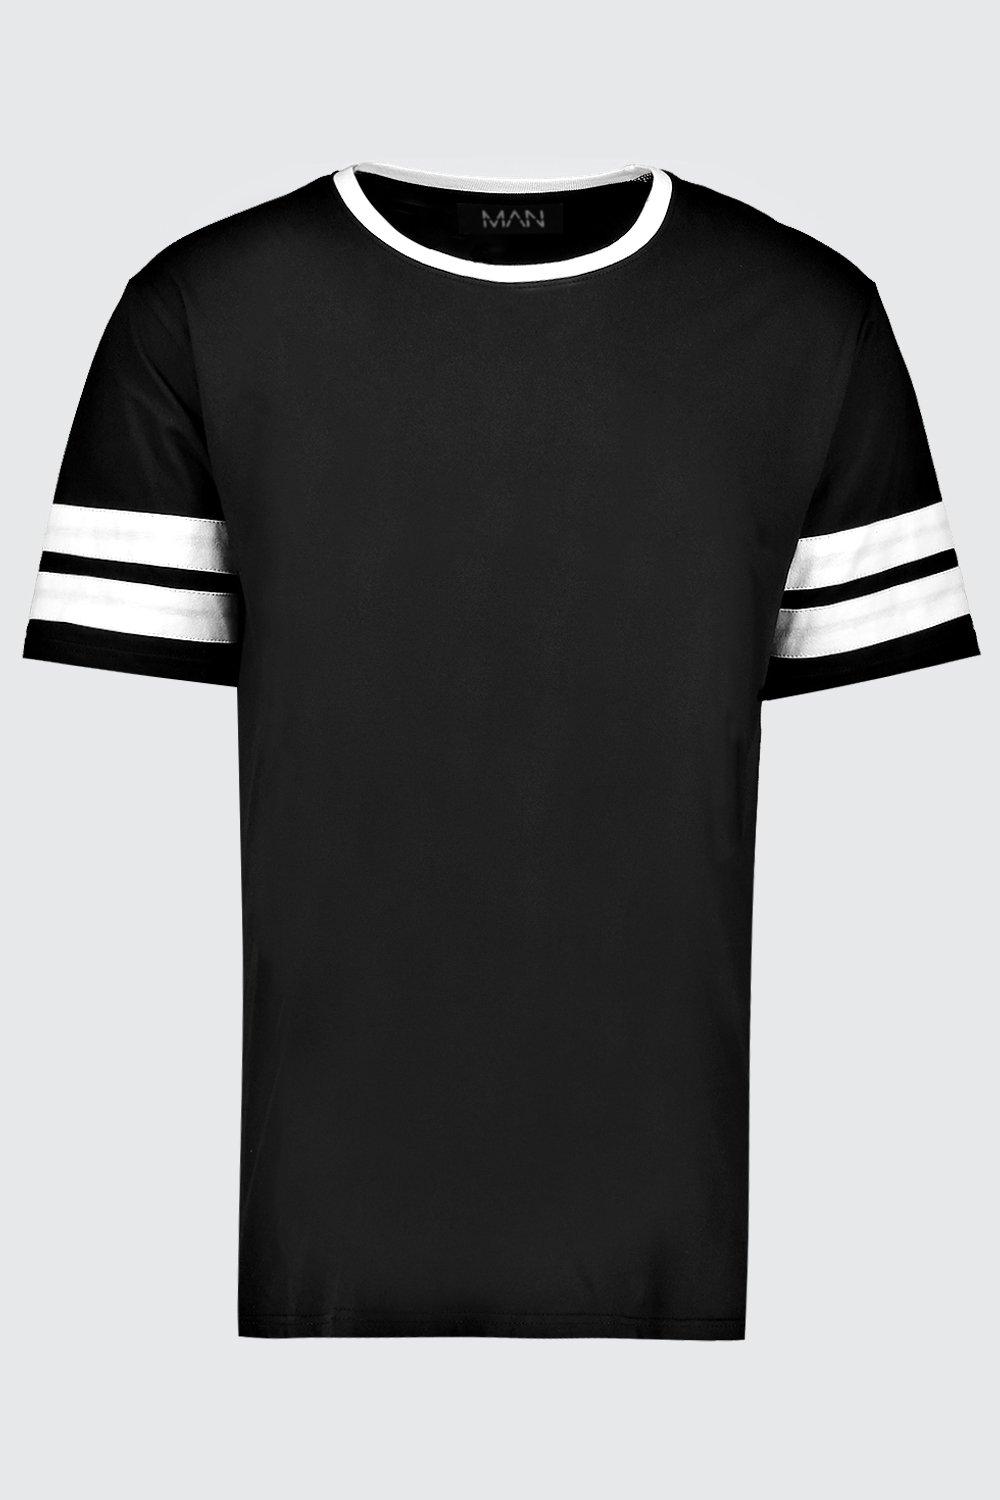 Plus Size Sleeve Colour Block T-Shirt